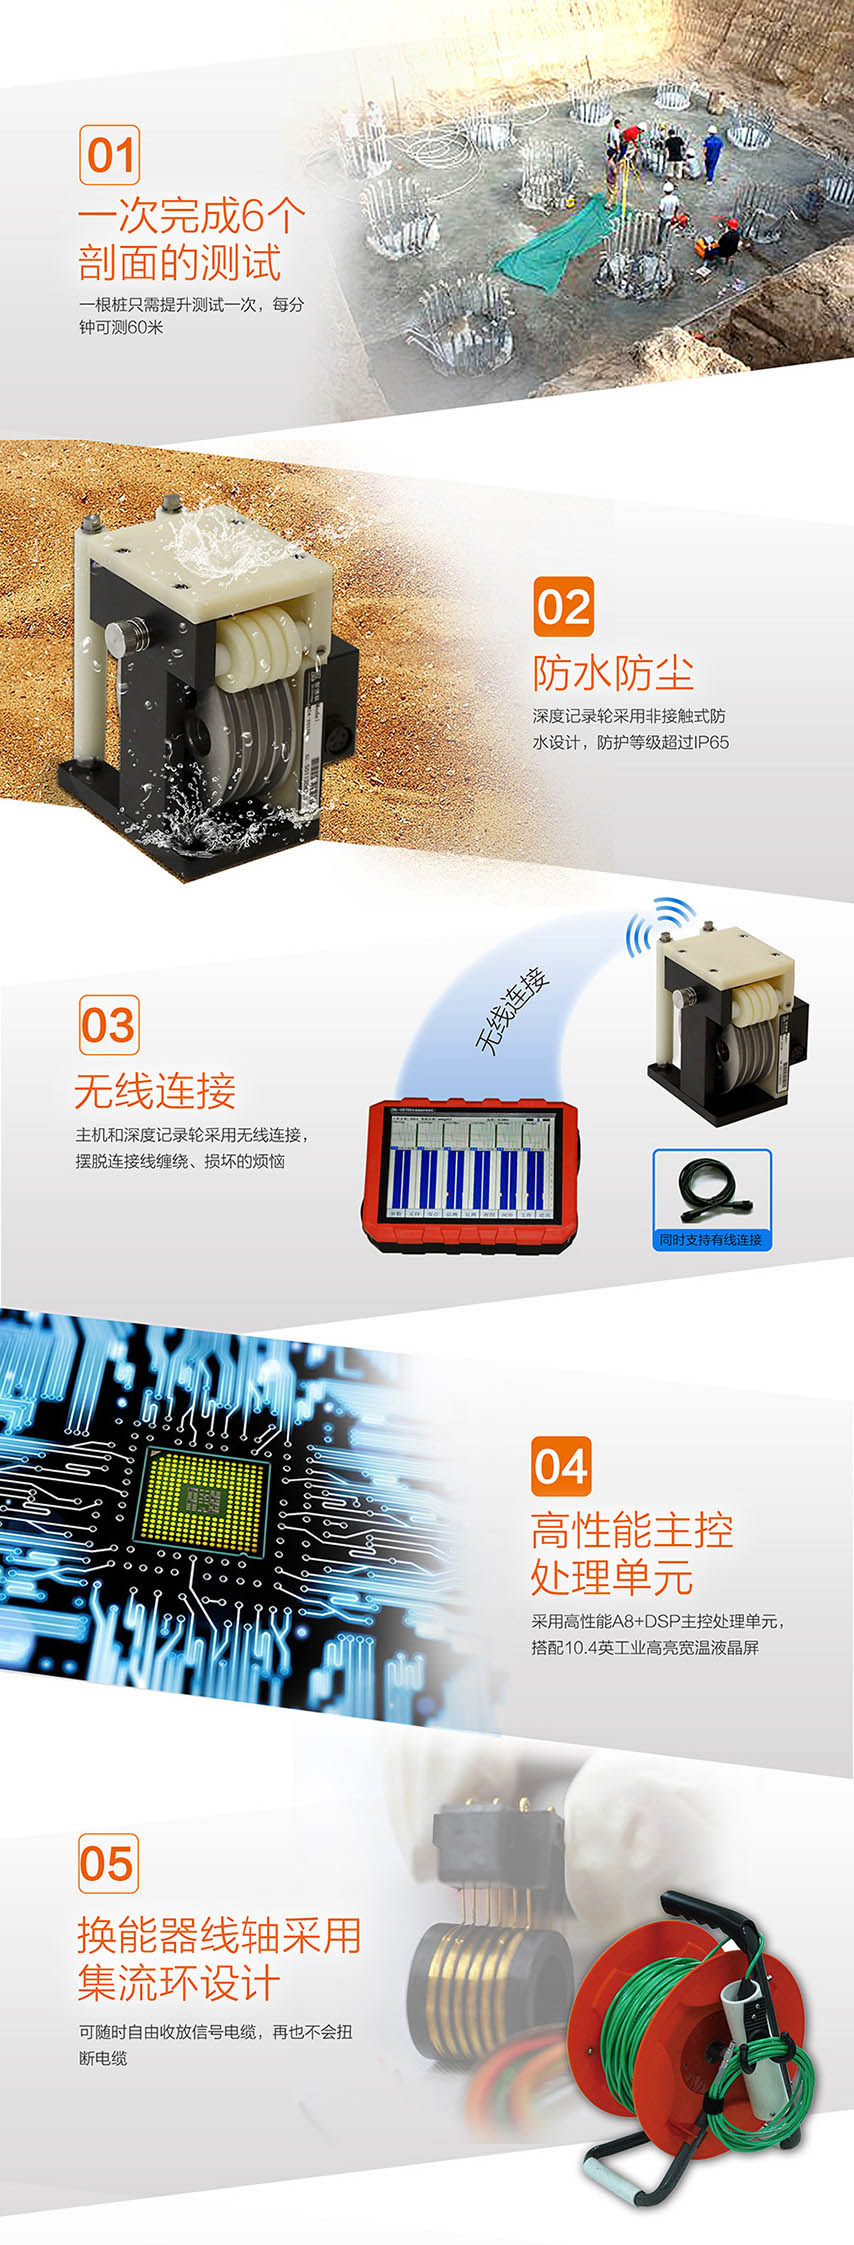 北京现金买球ZBL-U5700多通道超声测桩仪2